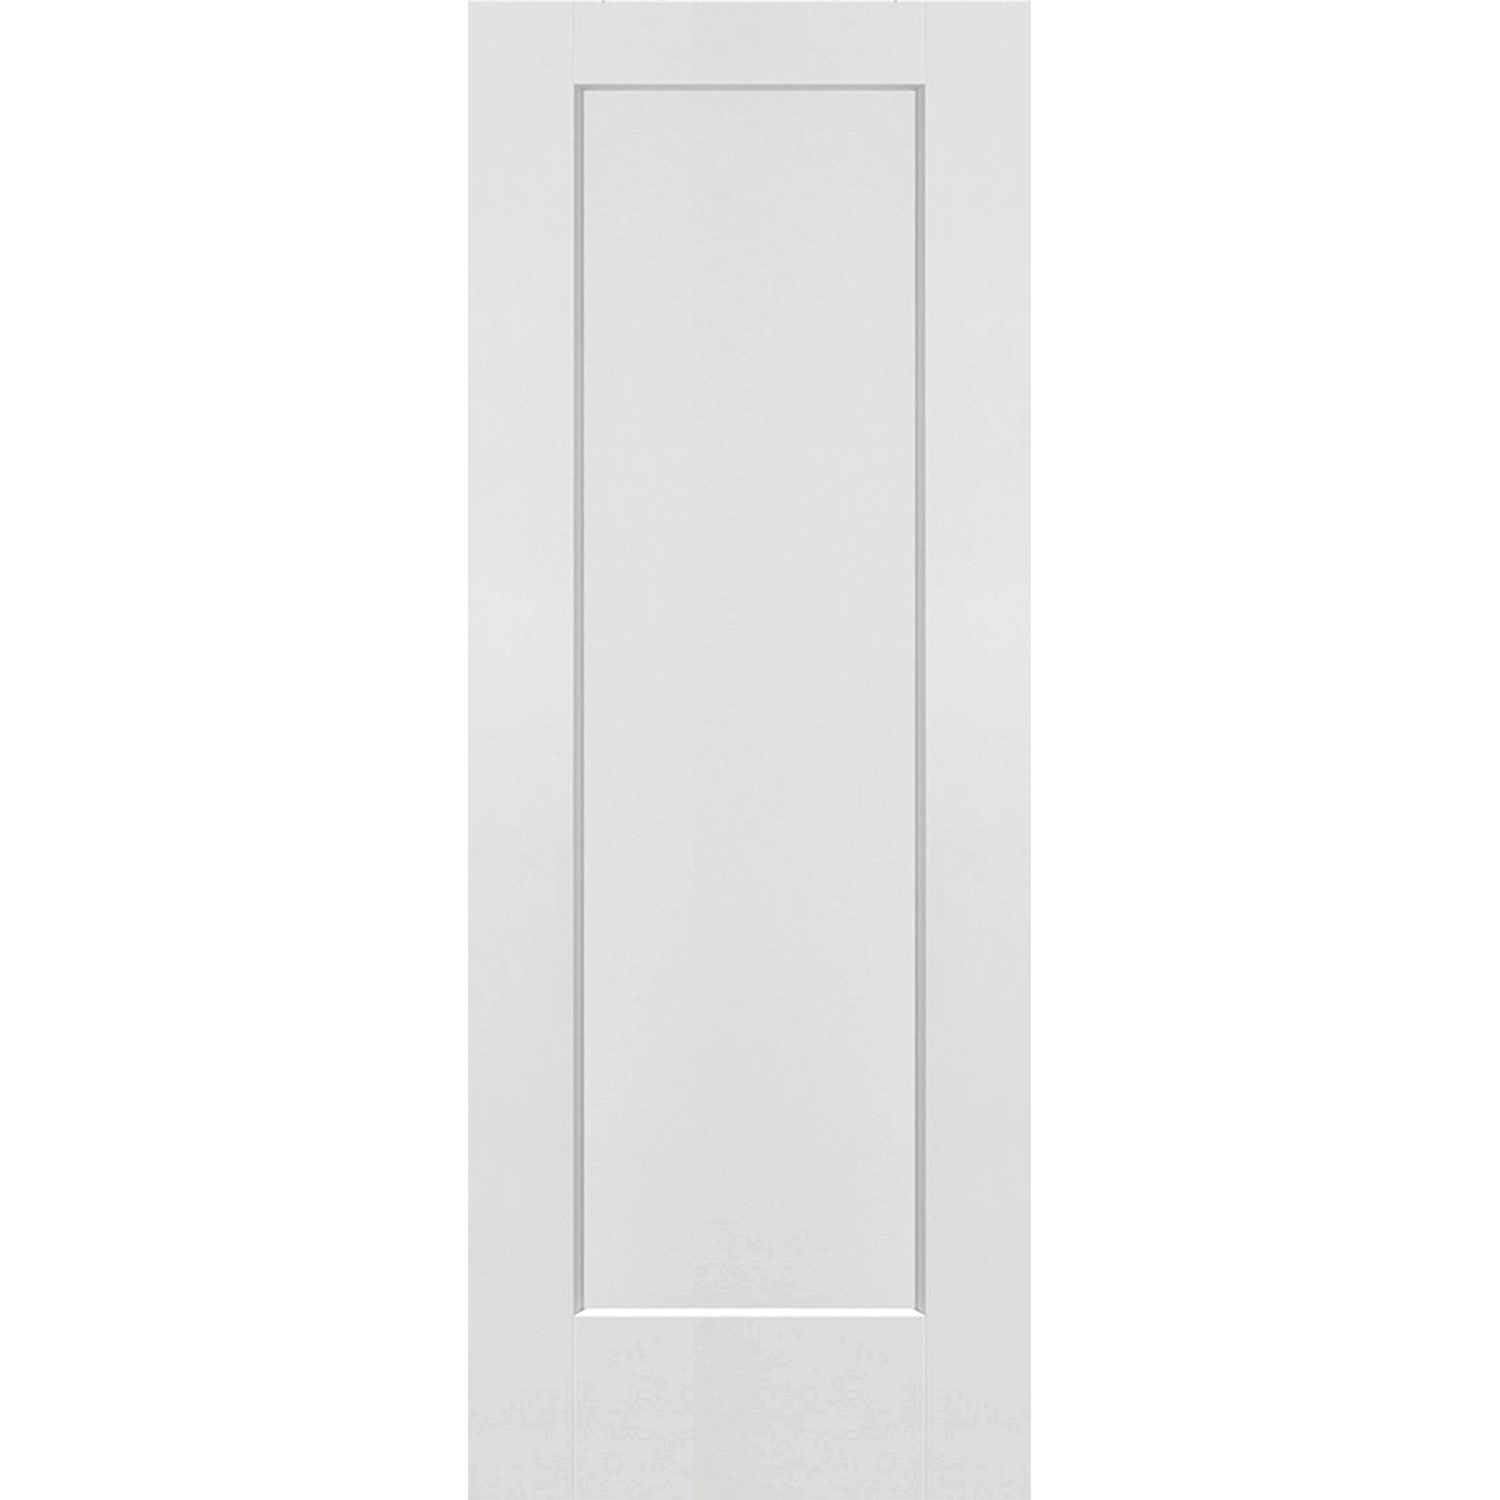 1 Panel Interior Door Shaker Style (Hollow Core) - 30 x 80 - D1HS30